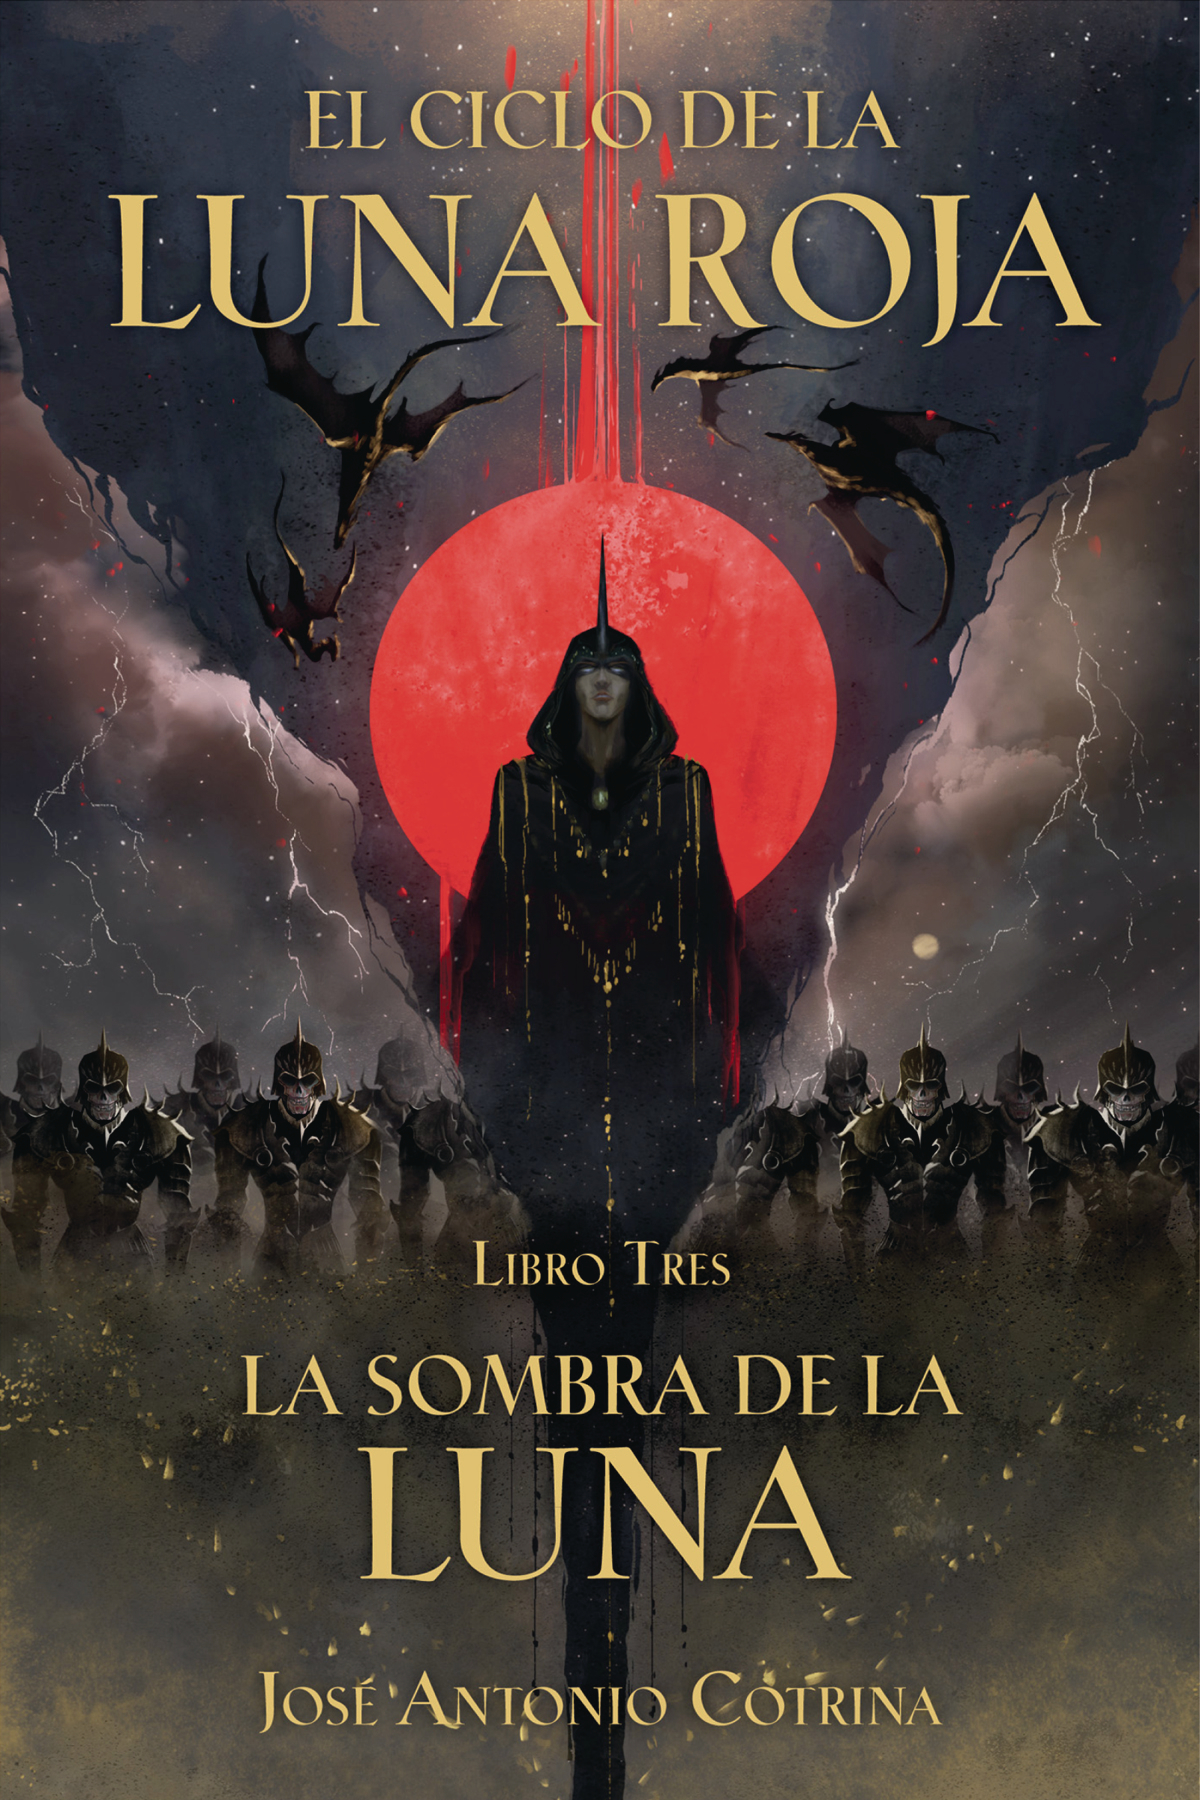 El Ciclo De Luna Roja Graphic Novel Volume 3